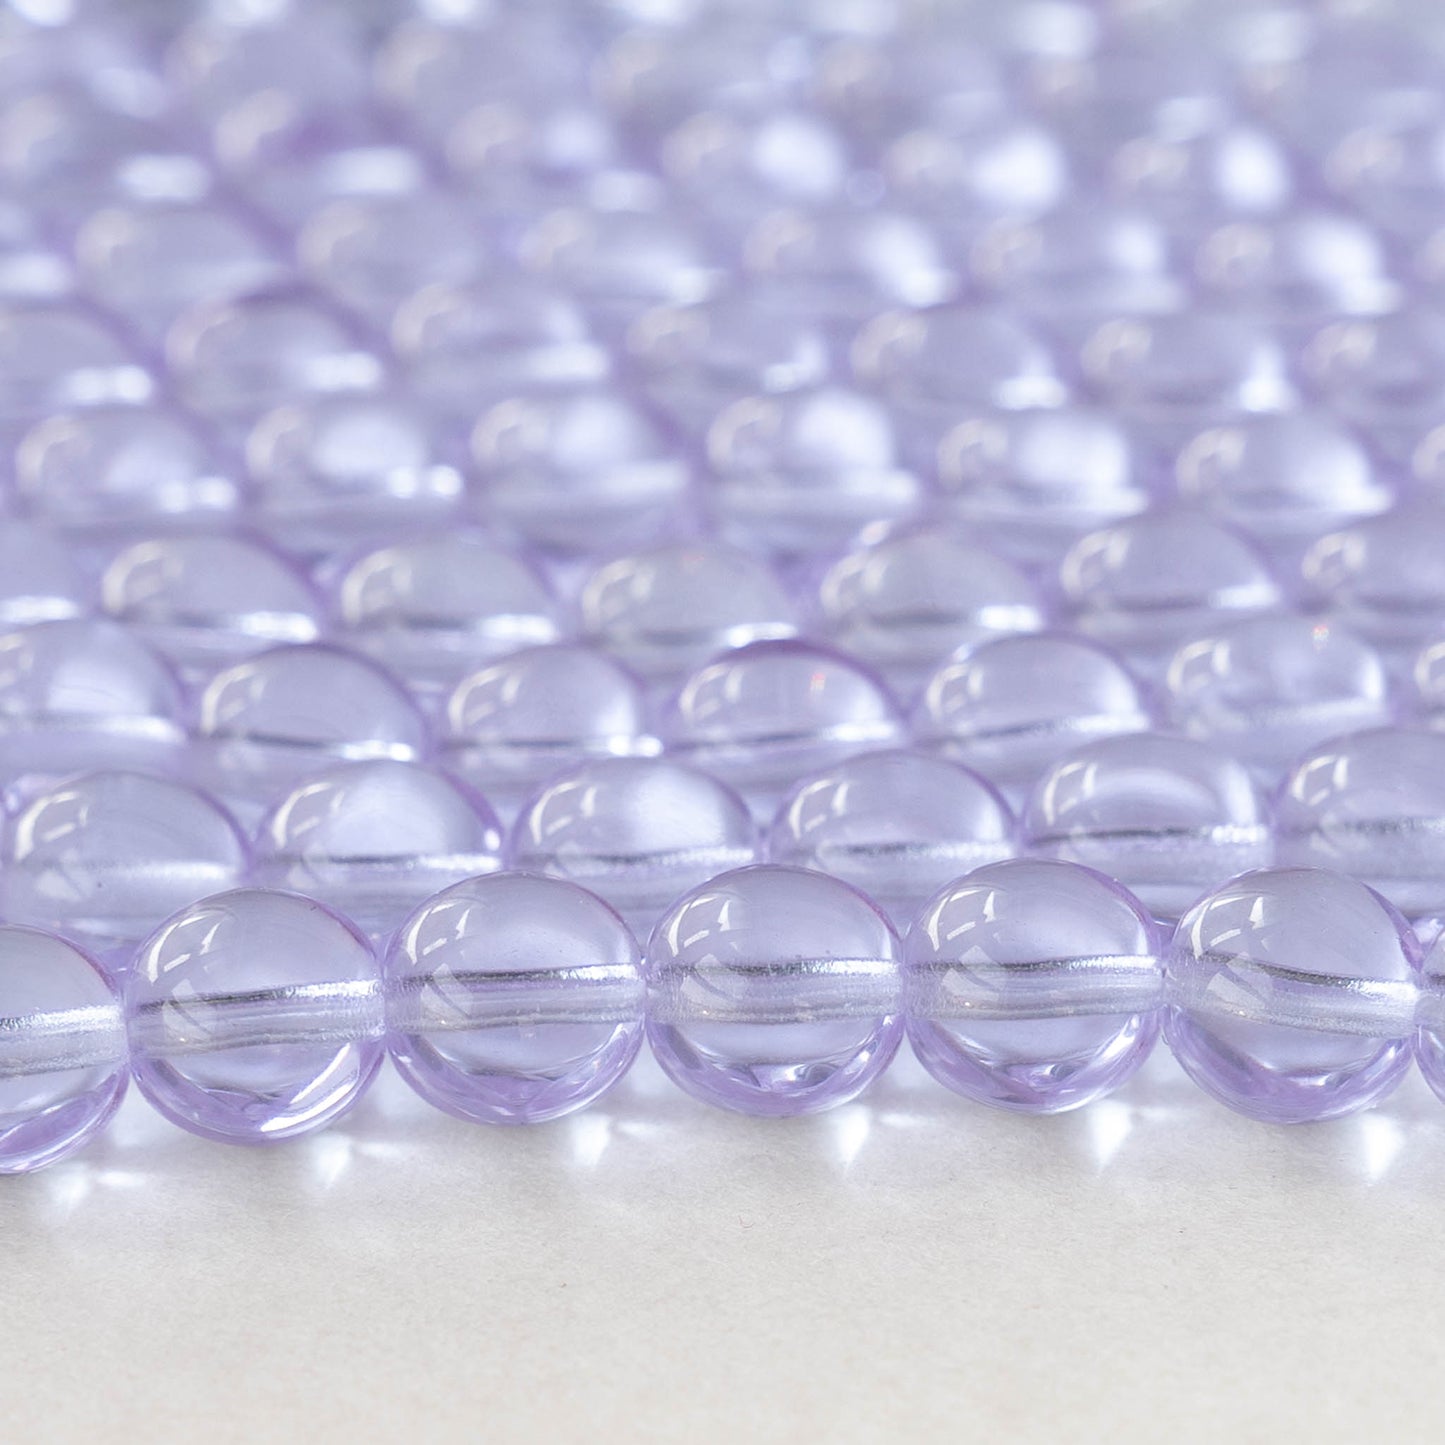 8mm Round Glass Beads - Alexandrite - 25 Beads